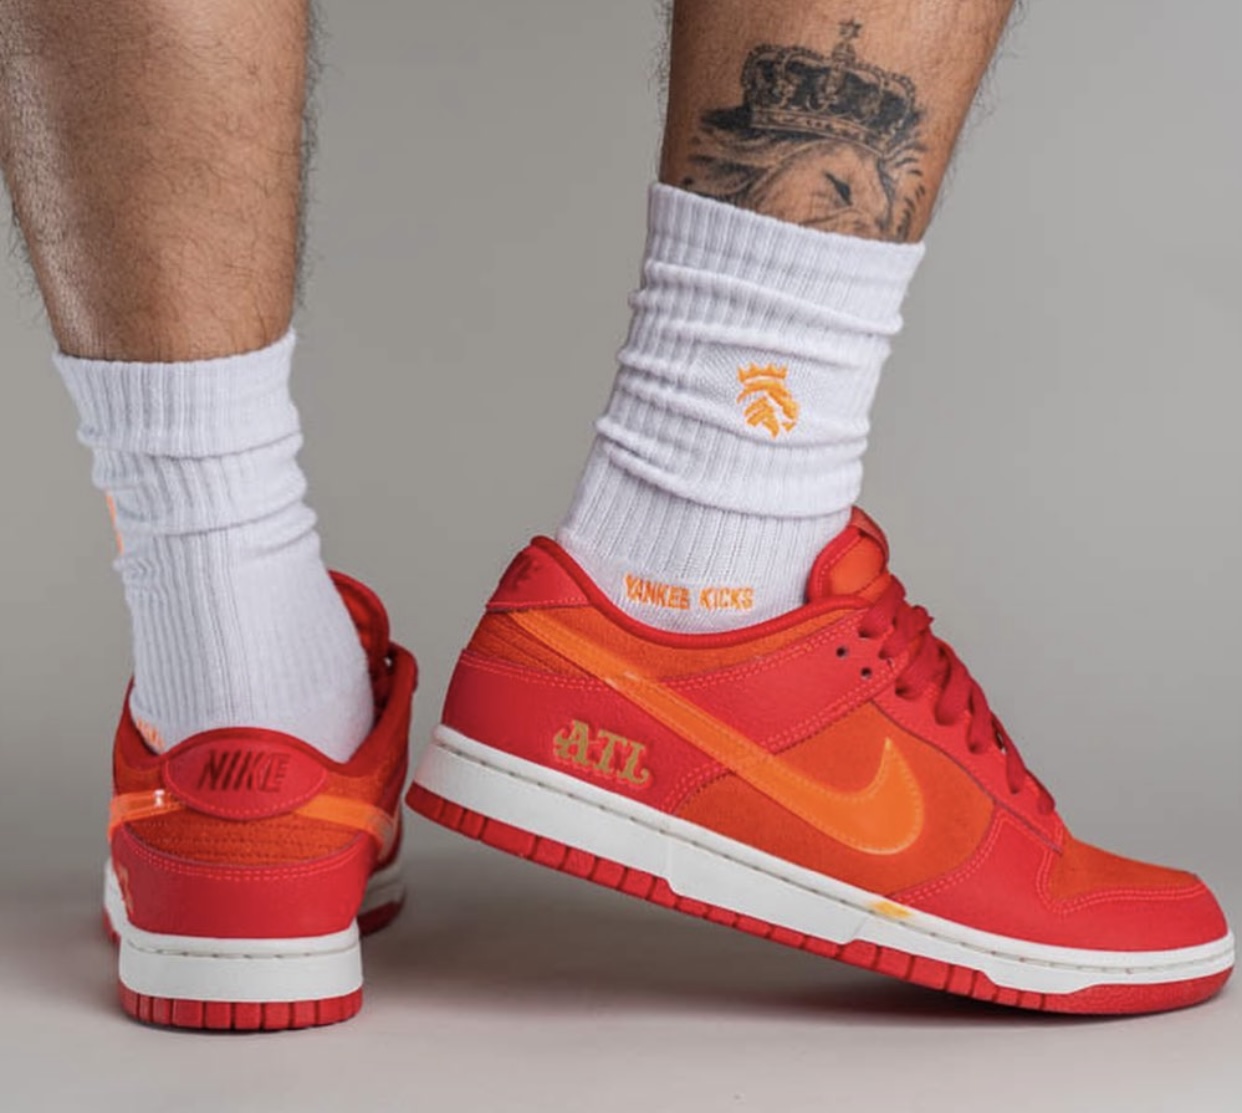 Nike Dunk Low ATL Atlanta FD0724 657 Release Date On Feet 6